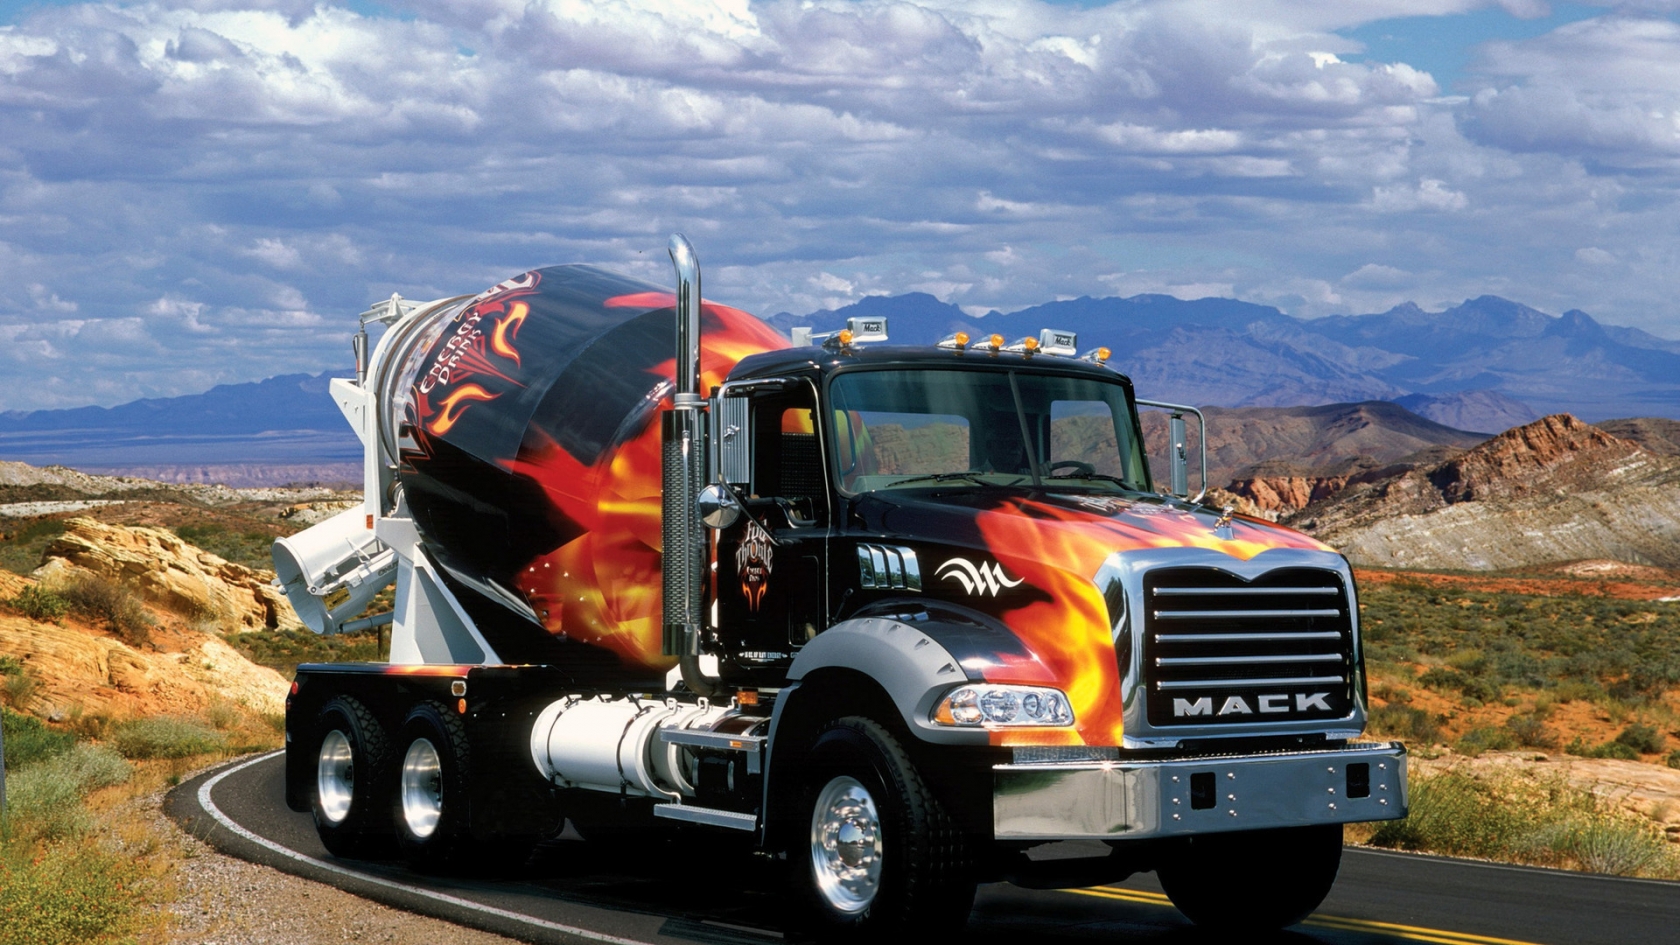 MACK Truck for 1680 x 945 HDTV resolution